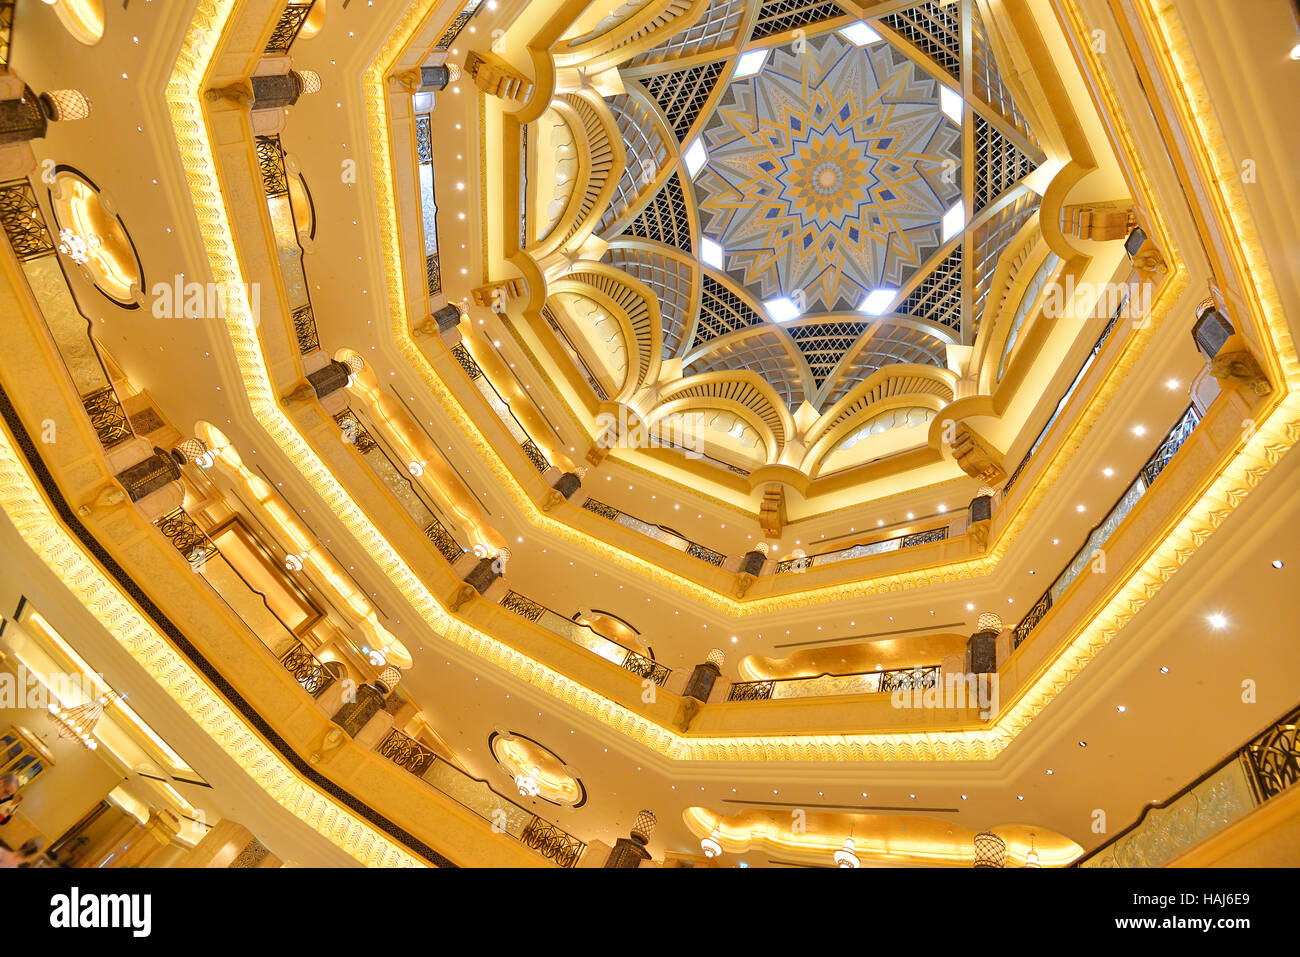 Luxury golden ceiling in Emirates Palace Hotel, Abu Dhabi Stock Photo